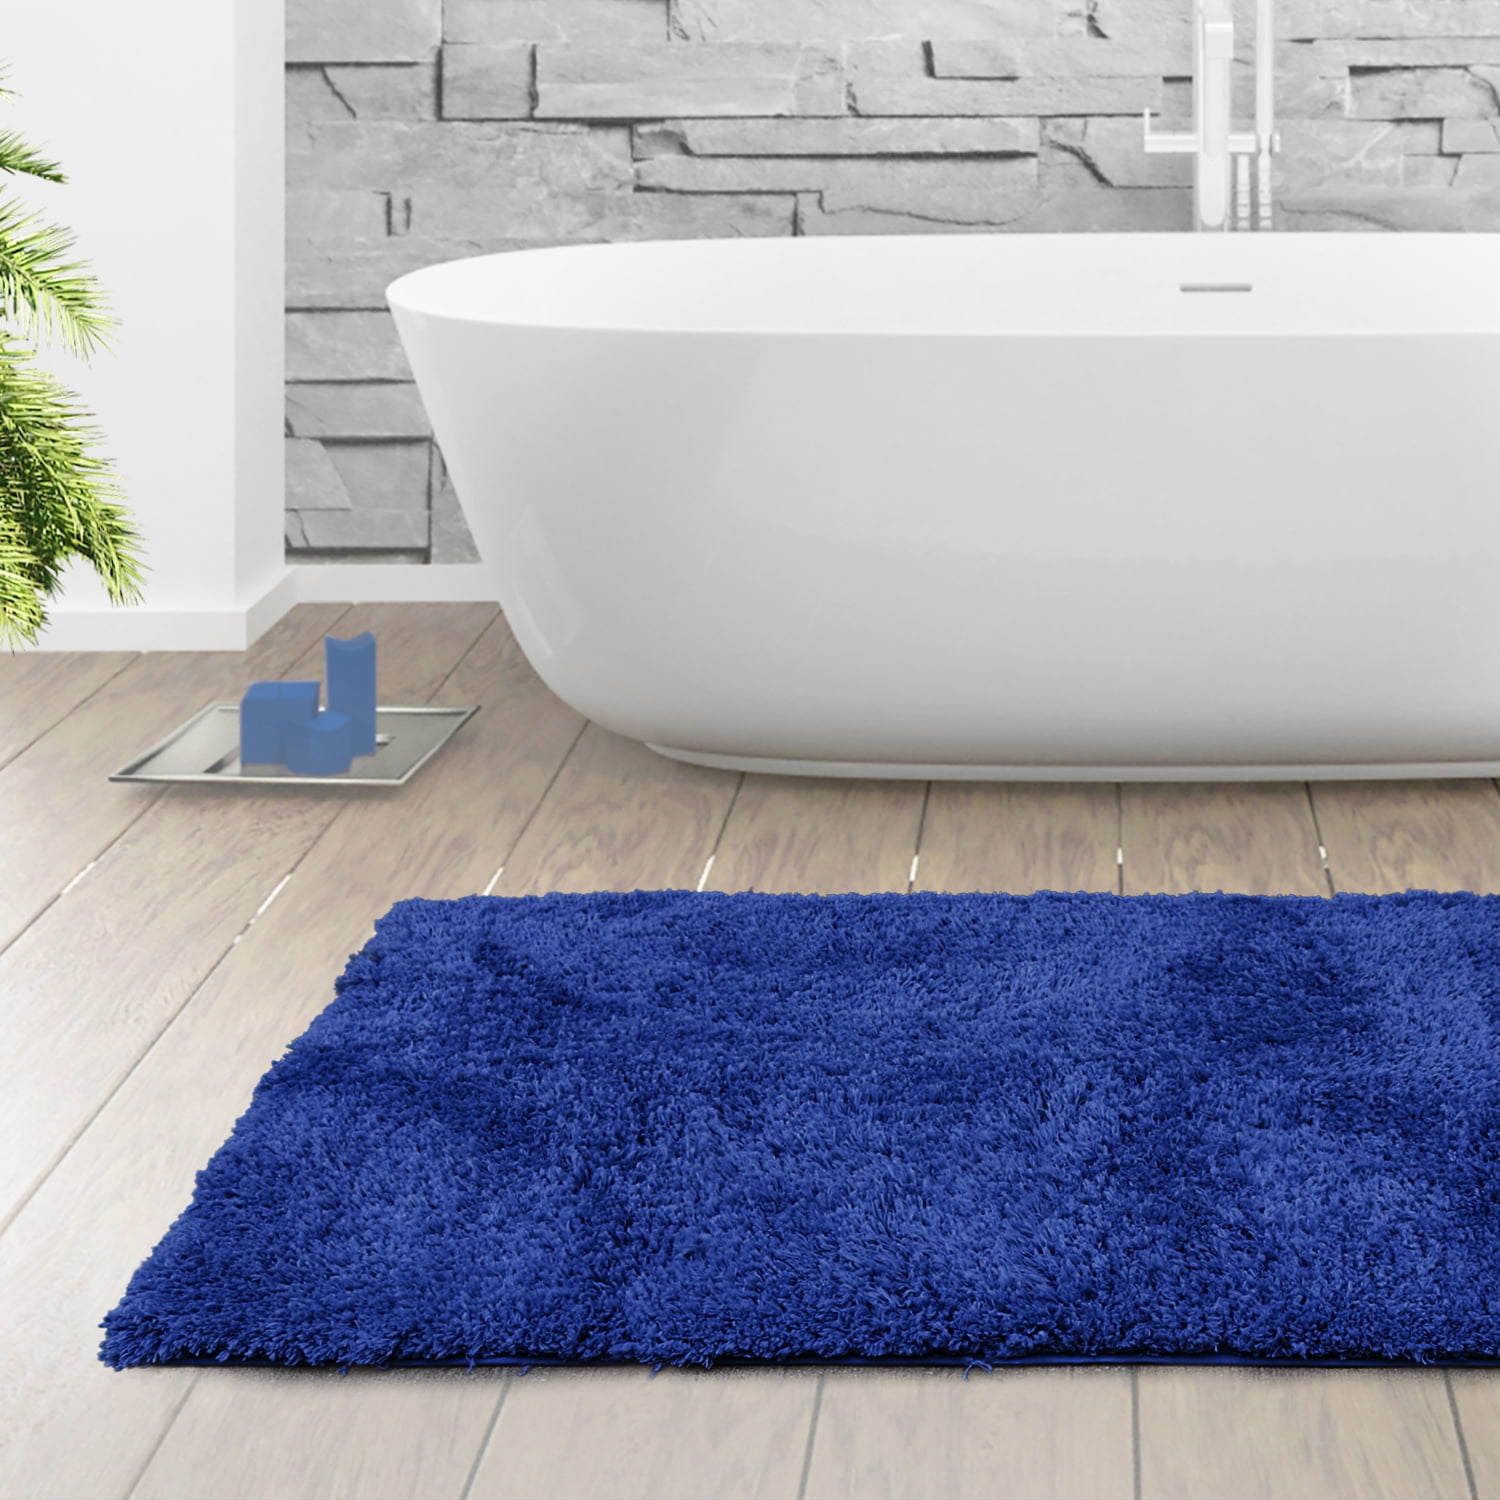 Reya Teal Blue Bath Mat